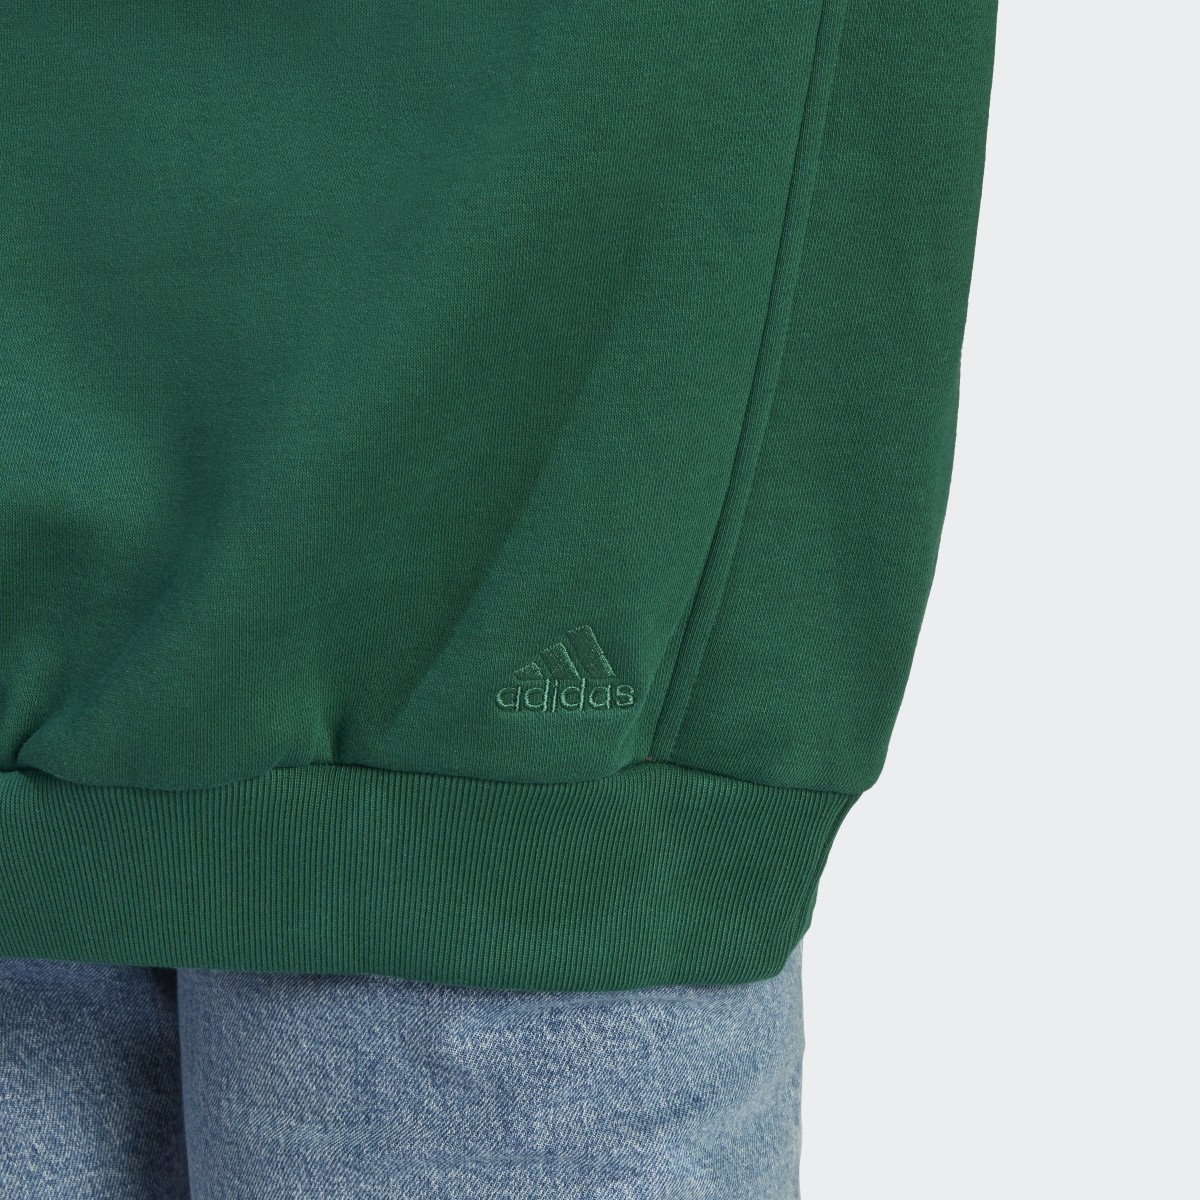 Adidas ALL SZN Fleece Graphic Sweatshirt. 7